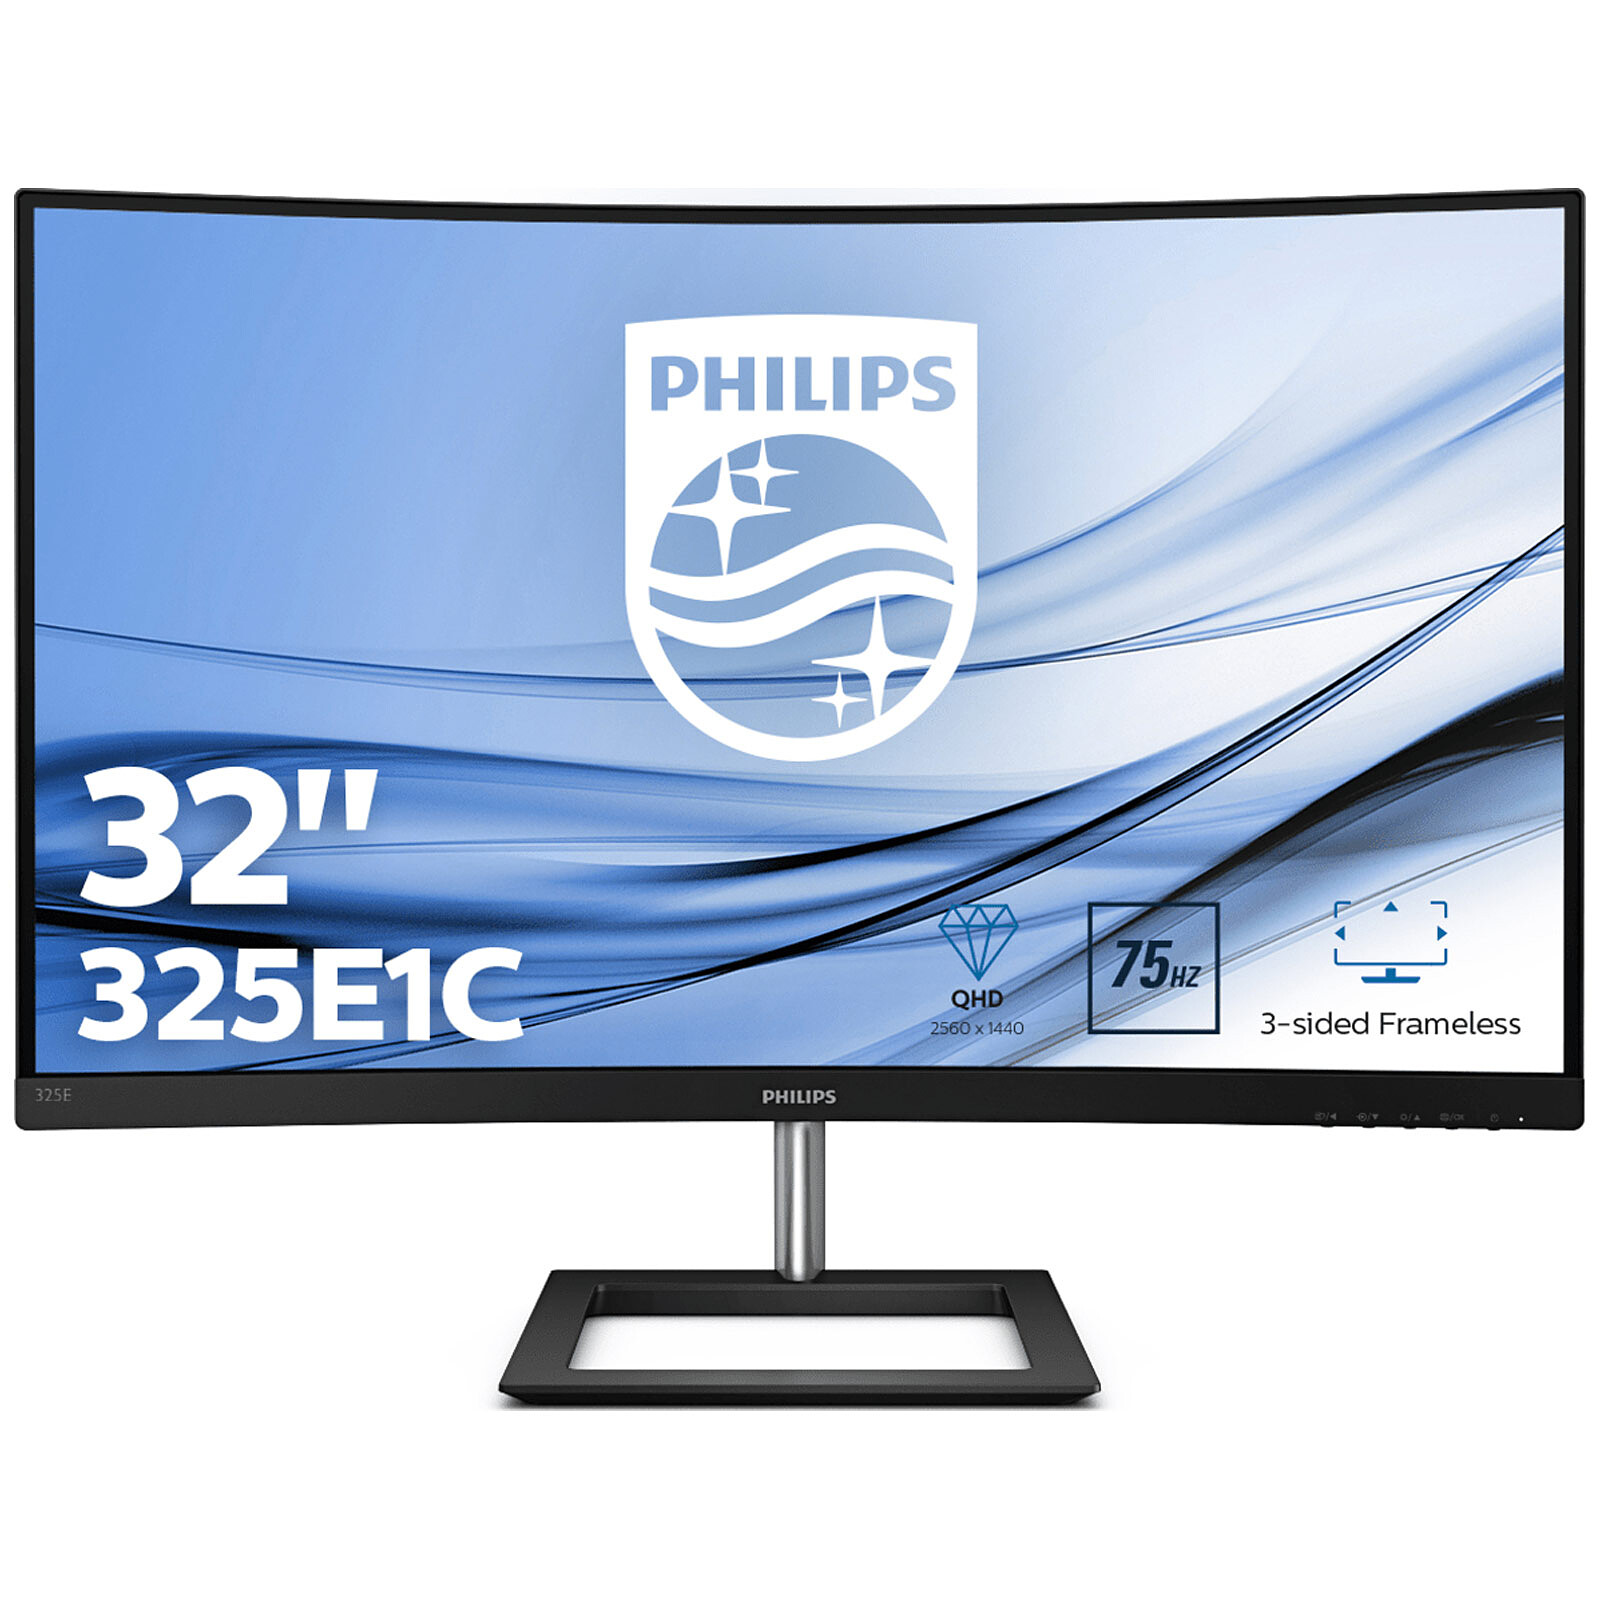 L'écran PC Philips incurvé 24 pouces à moins de 100 € chez